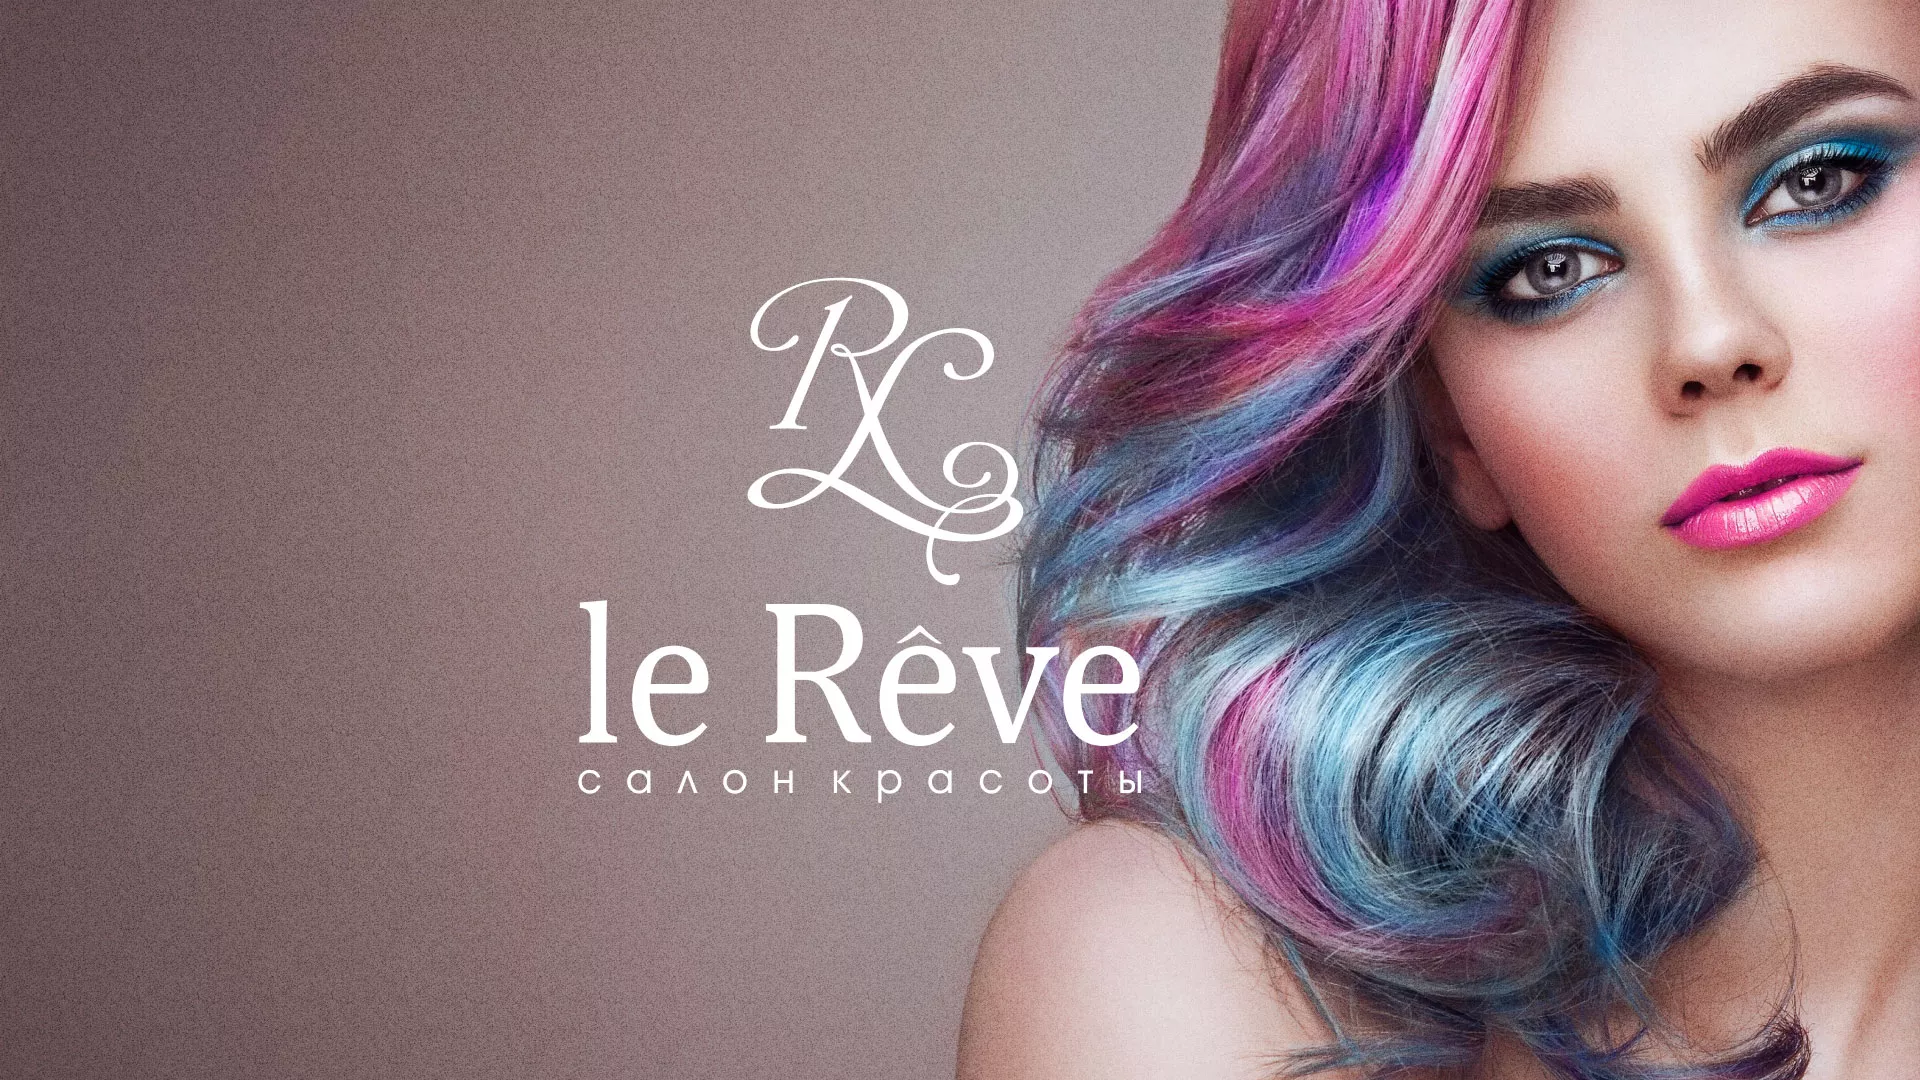 Создание сайта для салона красоты «Le Reve» в Брянске